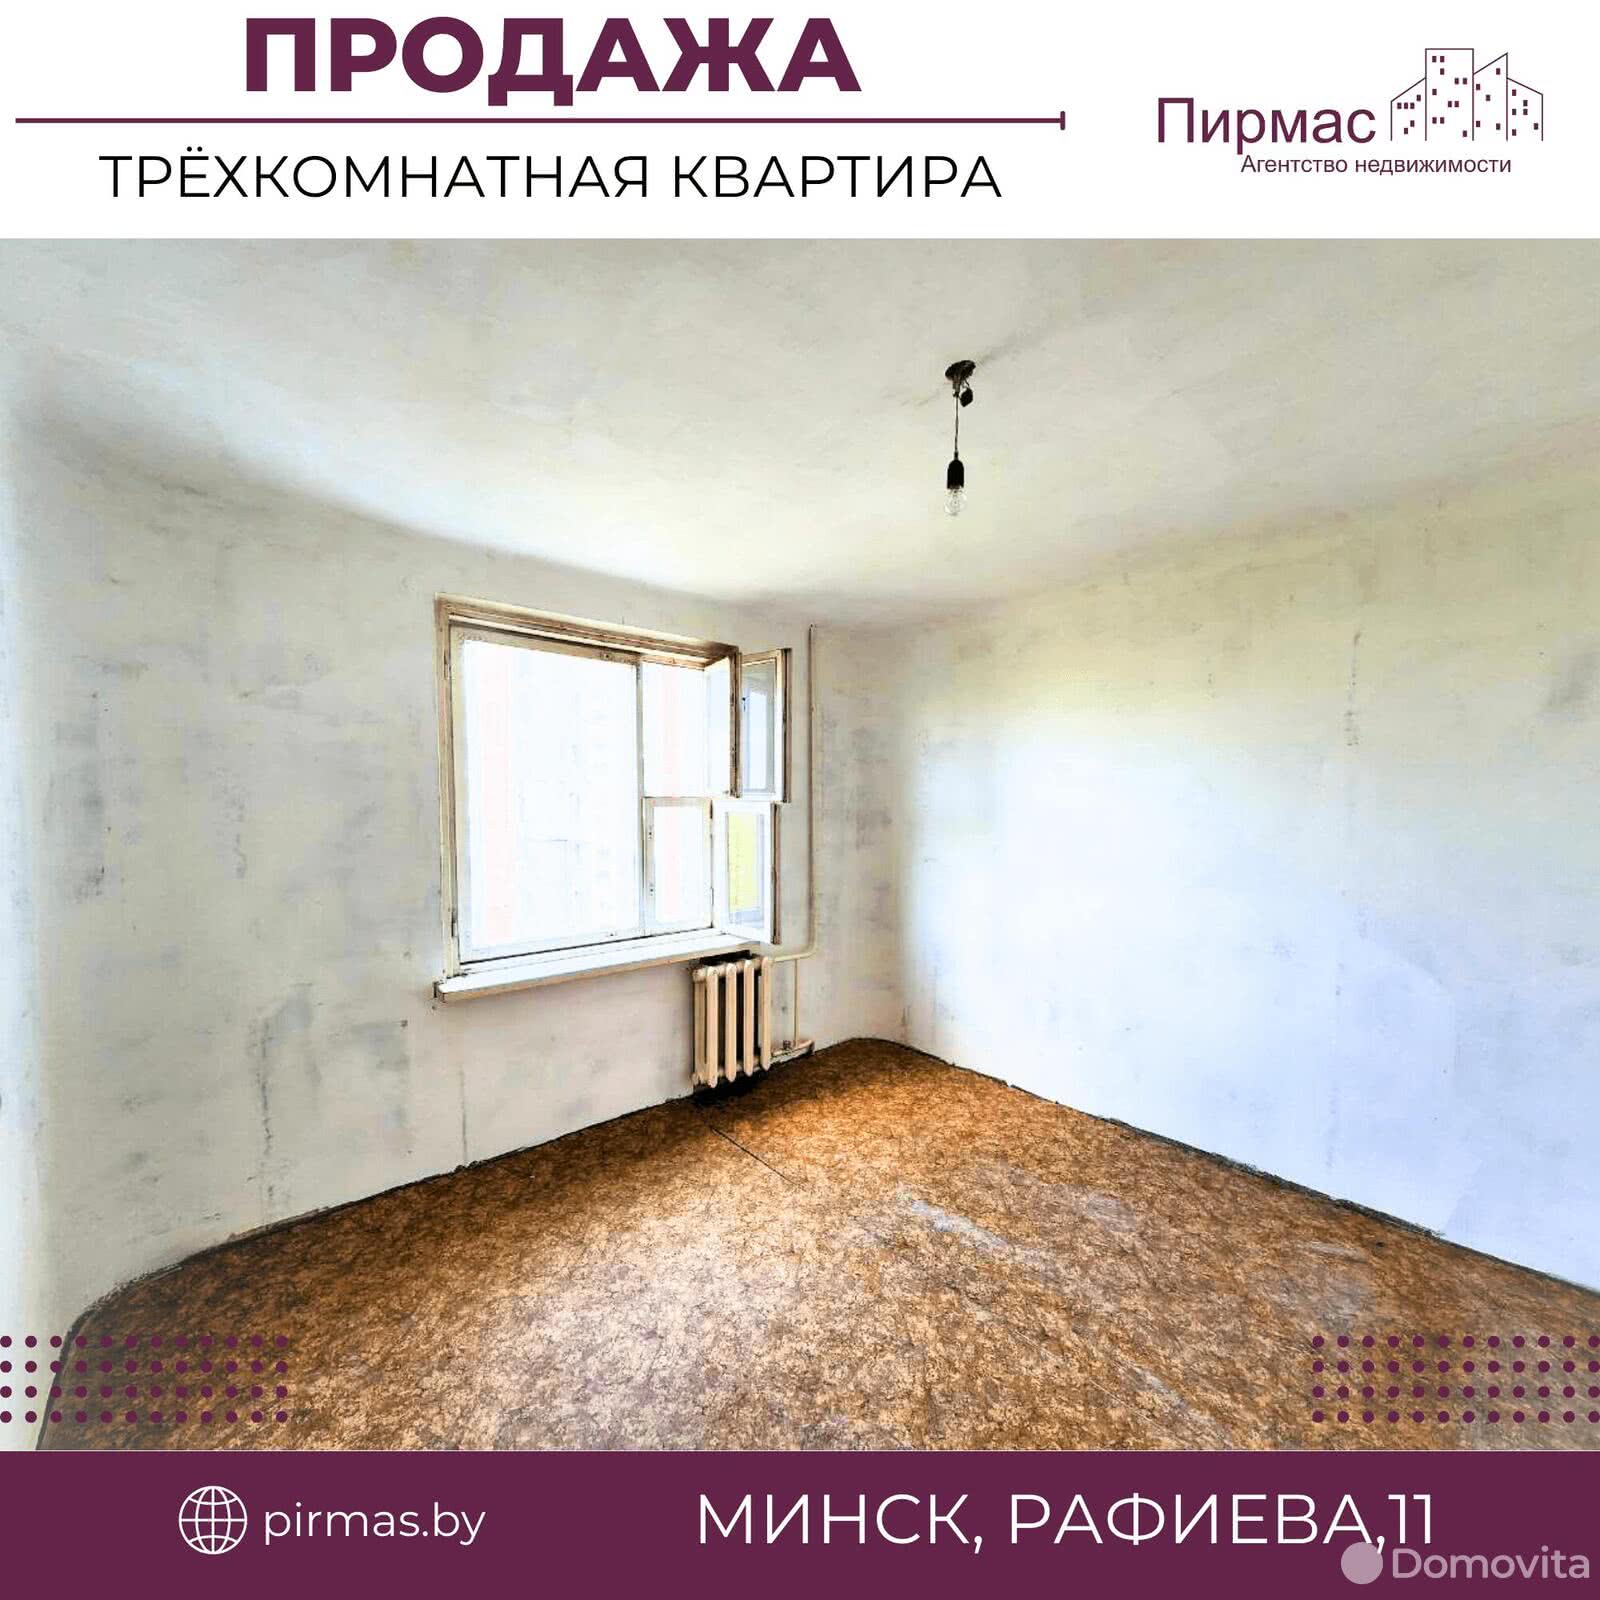 квартира, Минск, ул. Рафиева, д. 11, стоимость продажи 273 411 р.